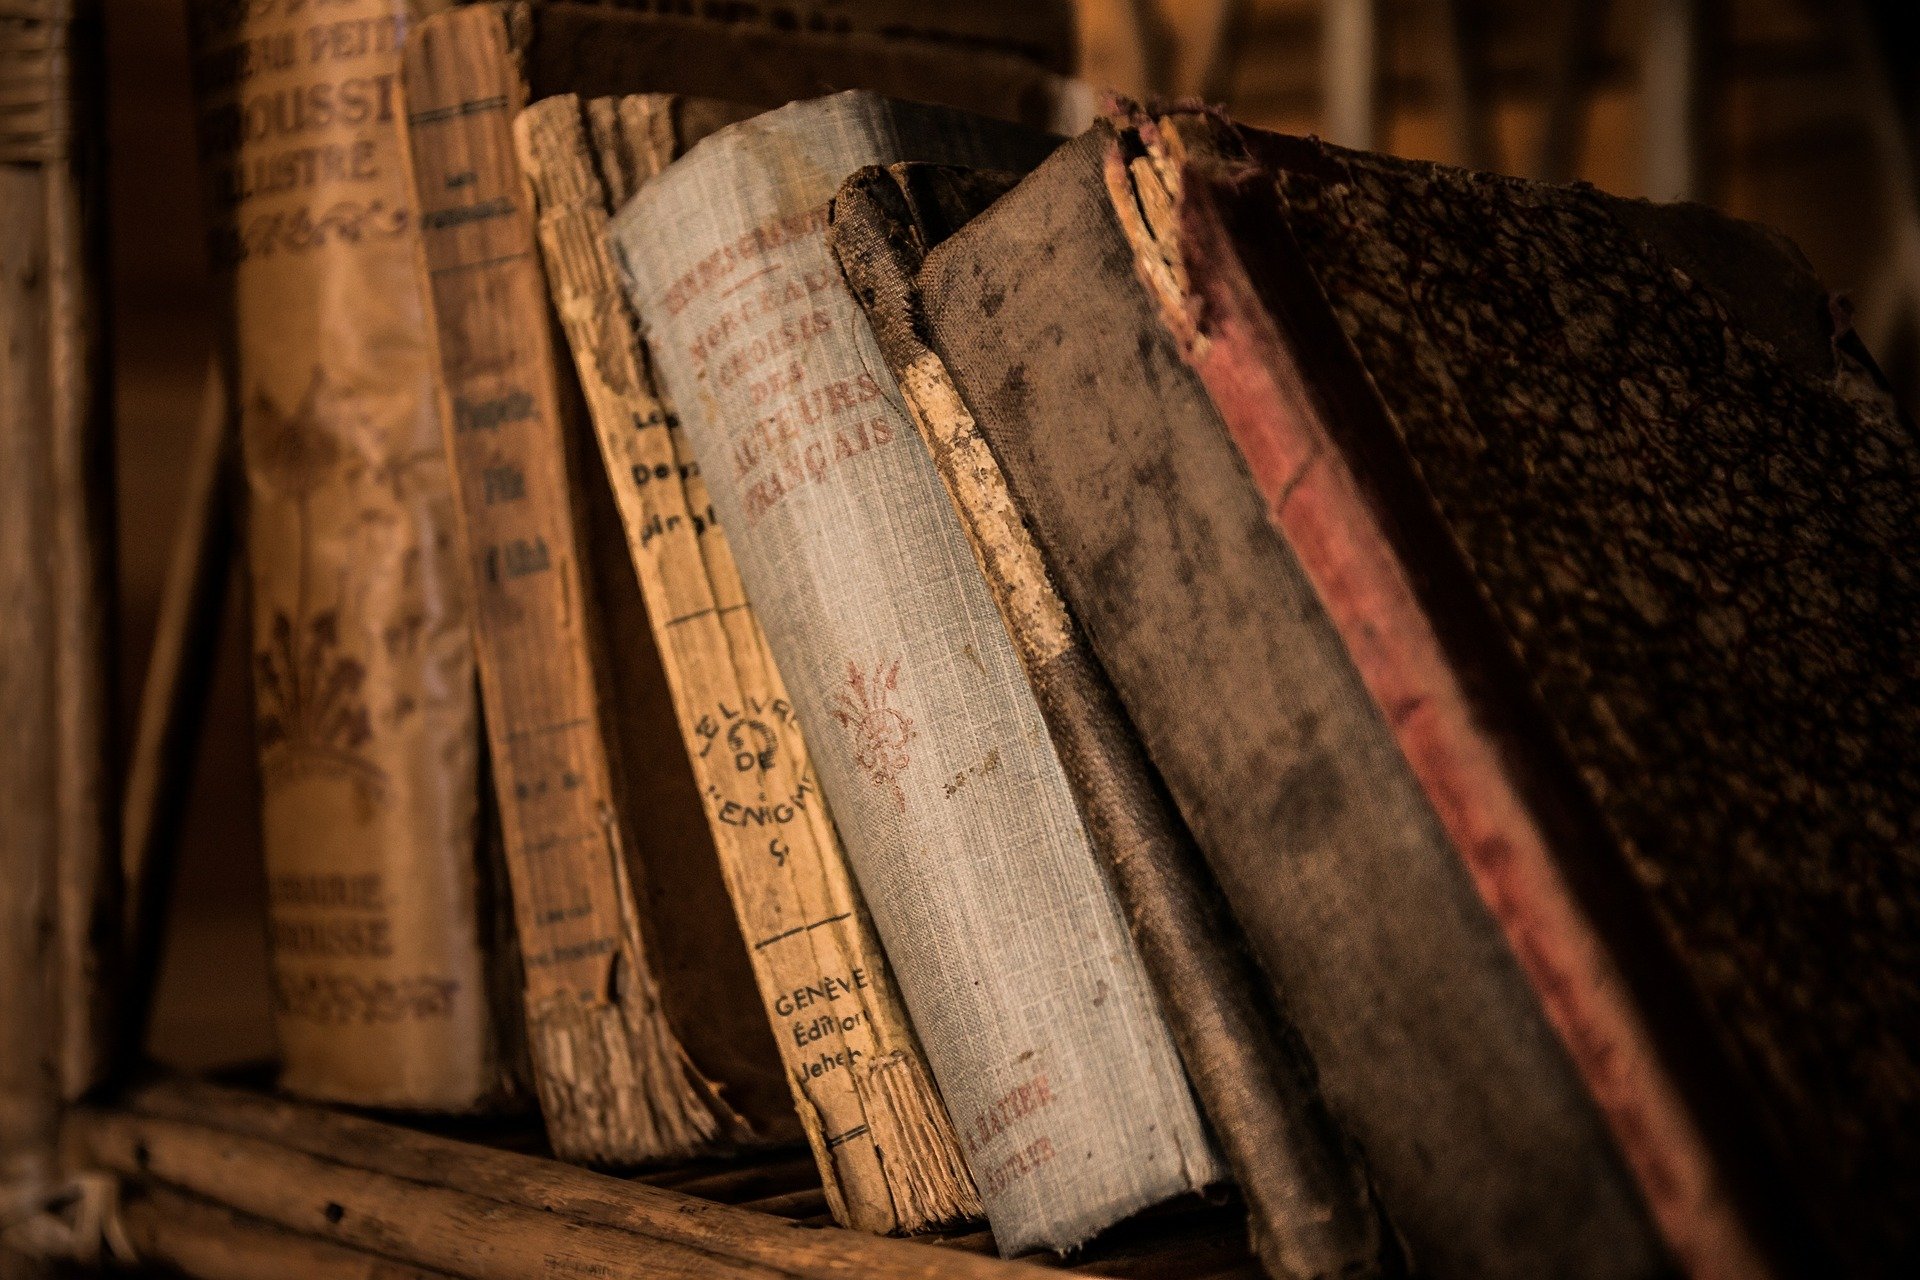 Libros antiguos en una estantería